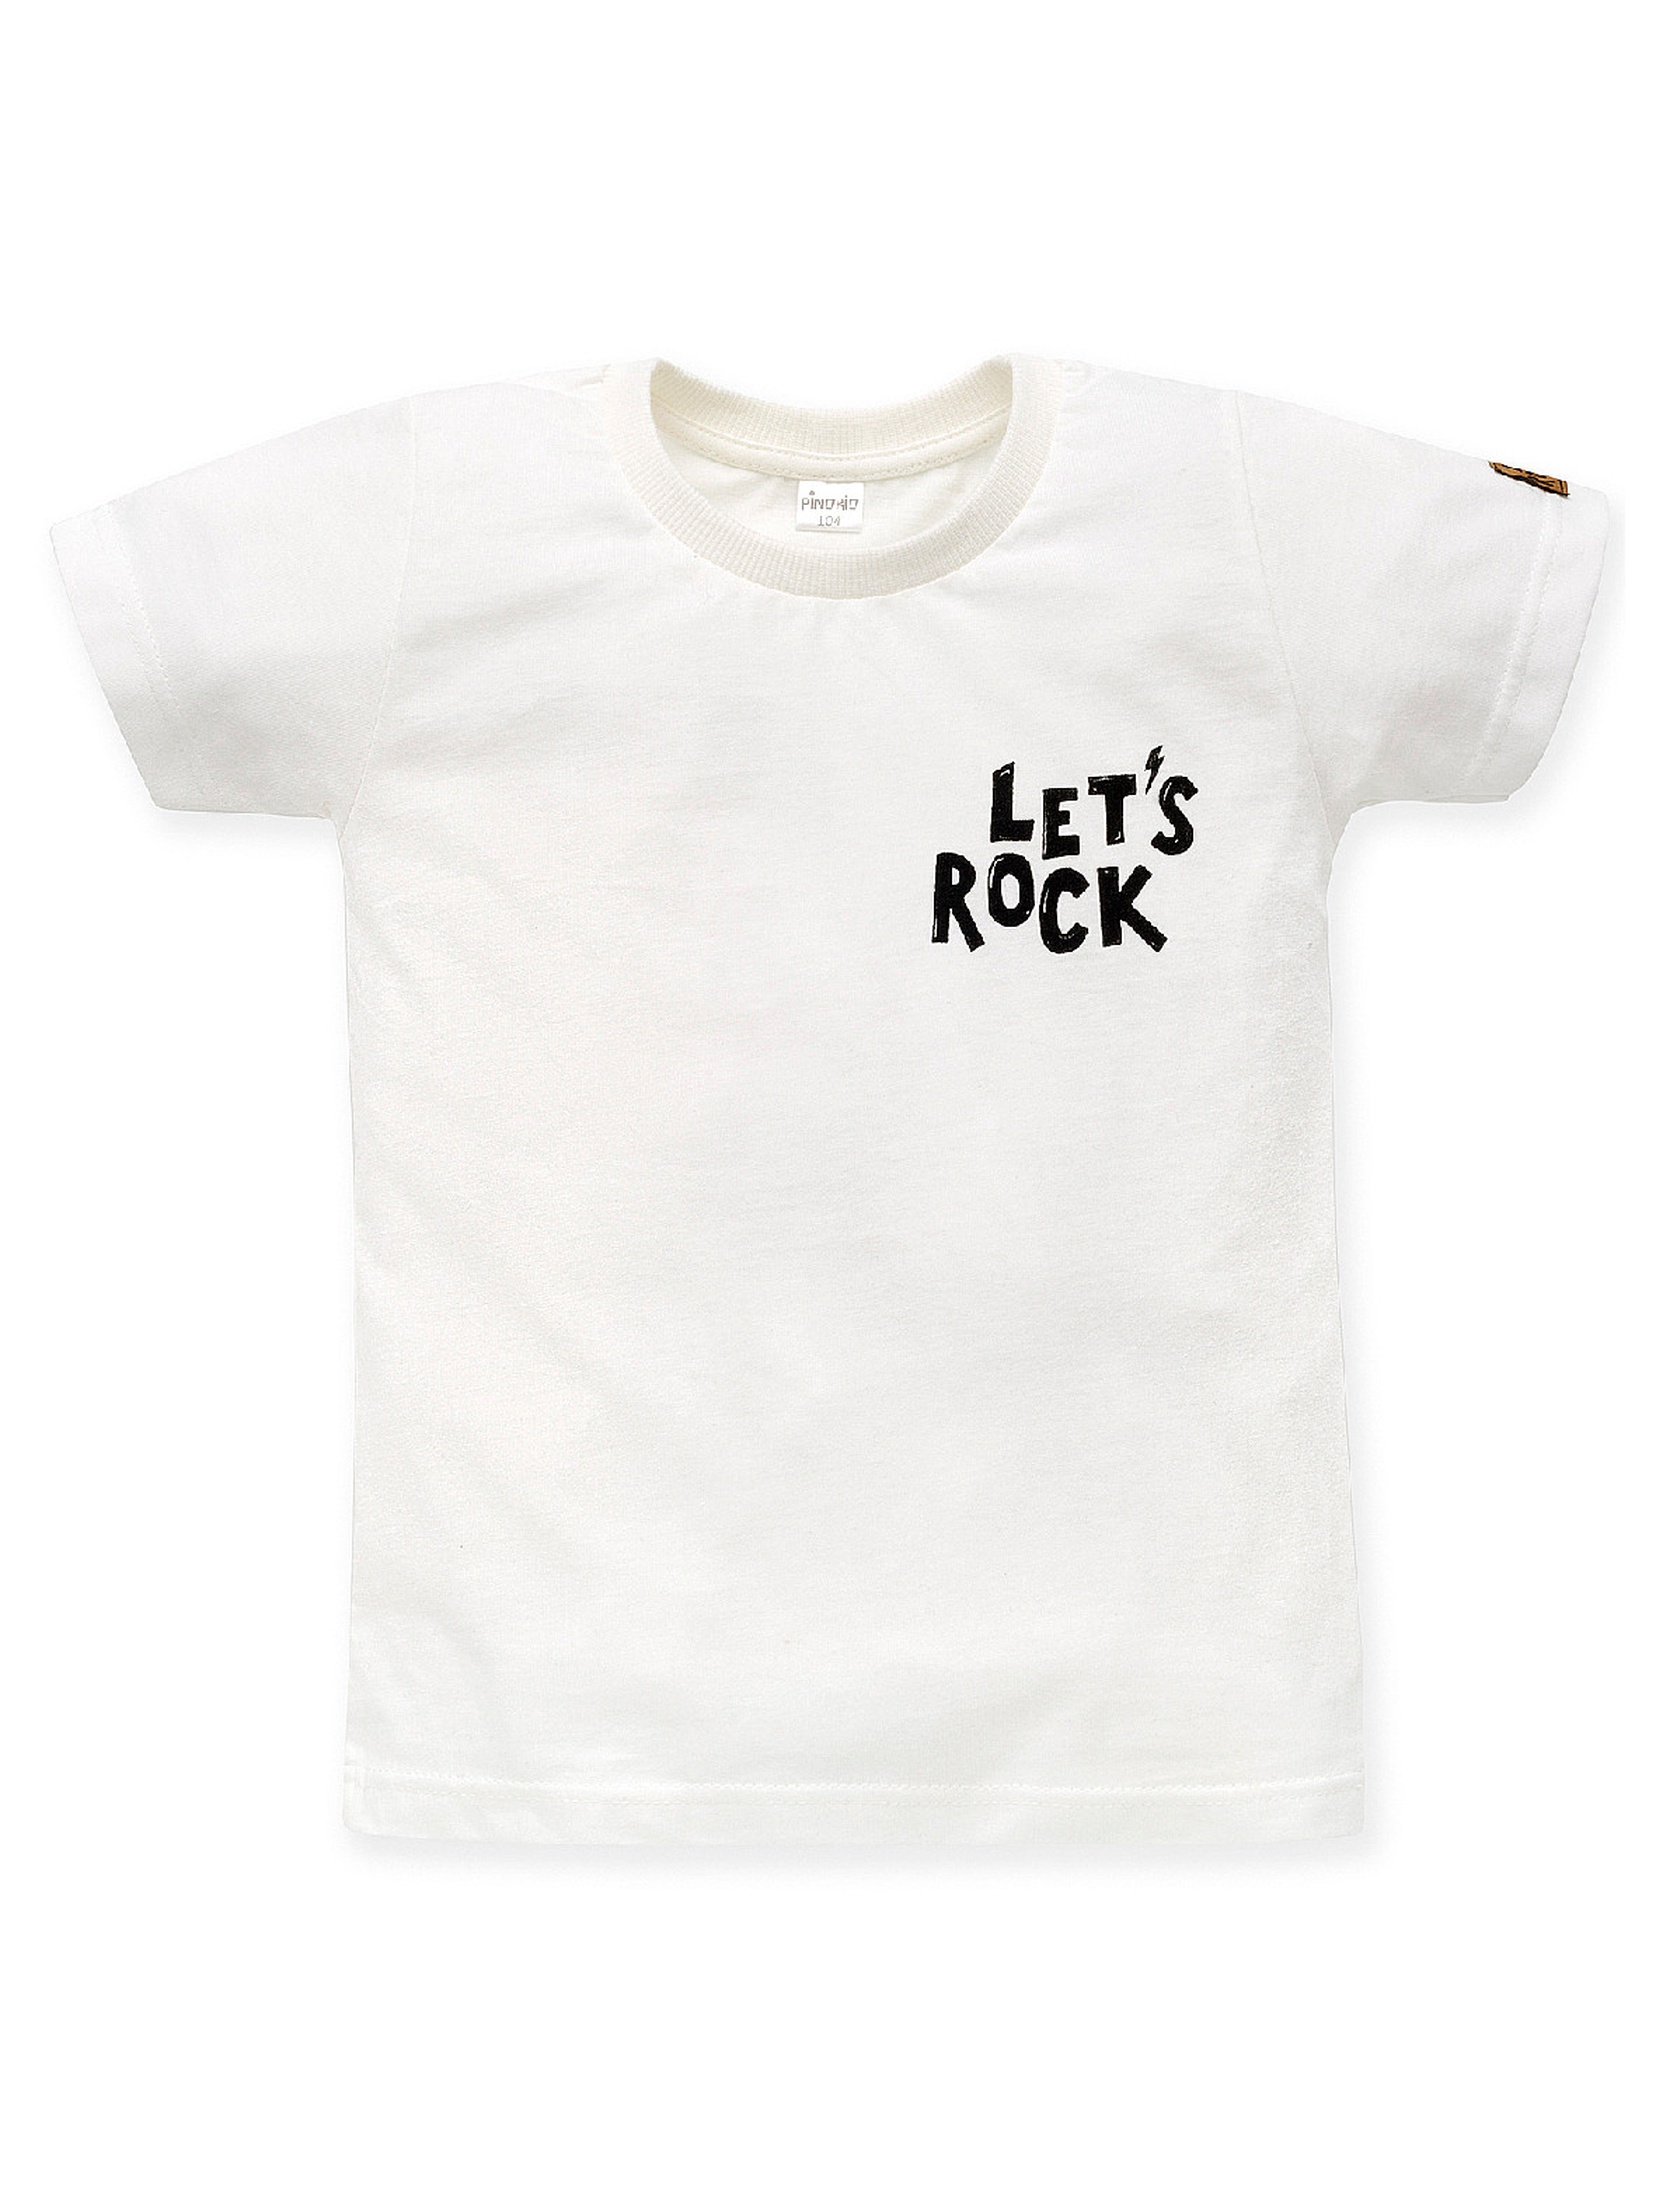 Dzianinowy t-shirt chłopięcy Let's rock ecru